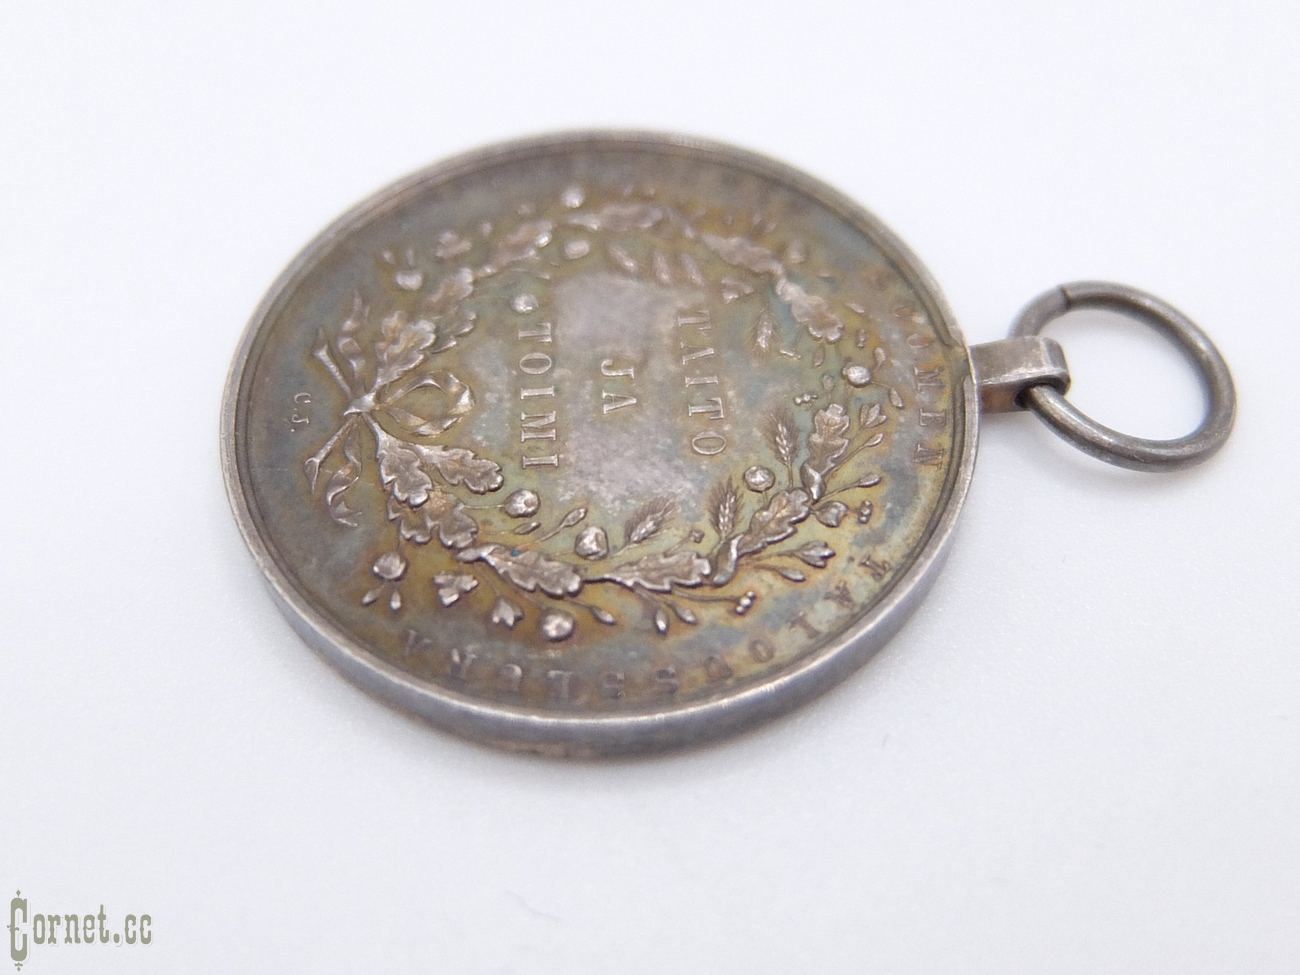 Медаль "За труды и усердие" от Финского сельскохозяйственного общества, периода Александра III